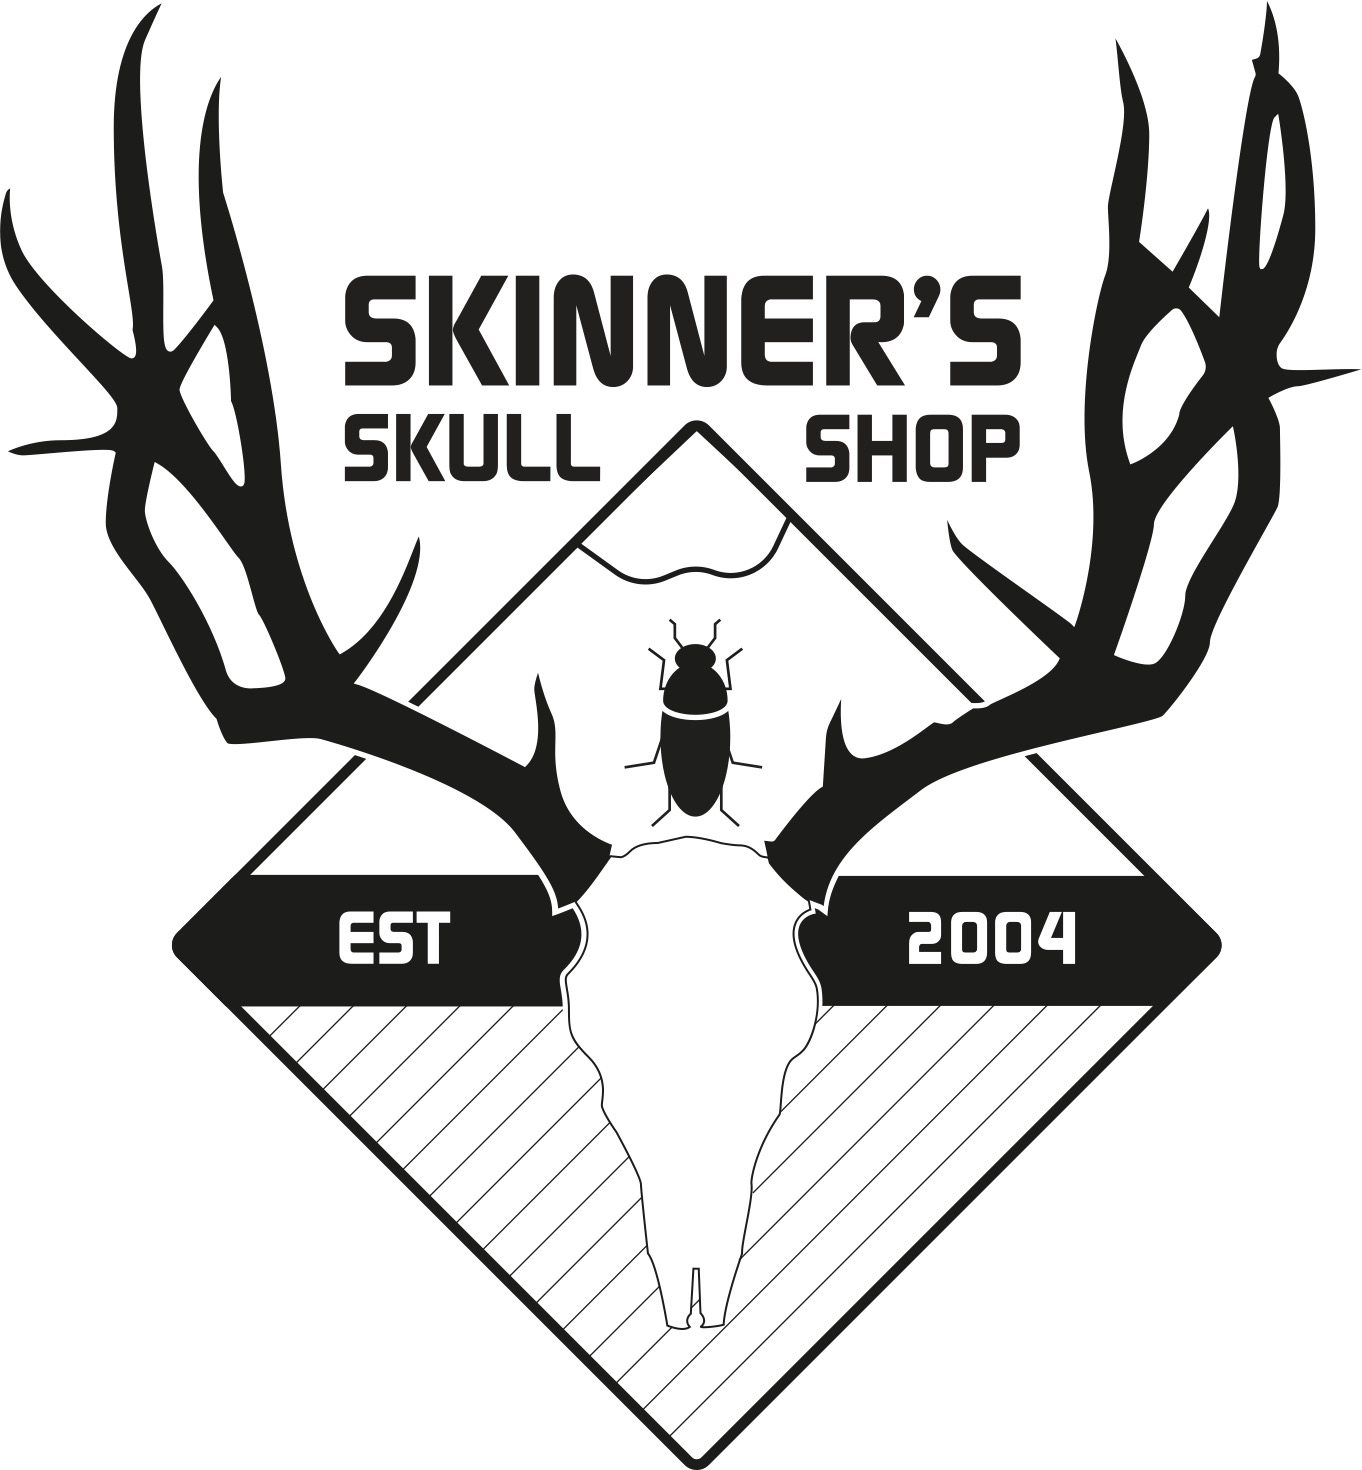 Skinner's Skull Shop